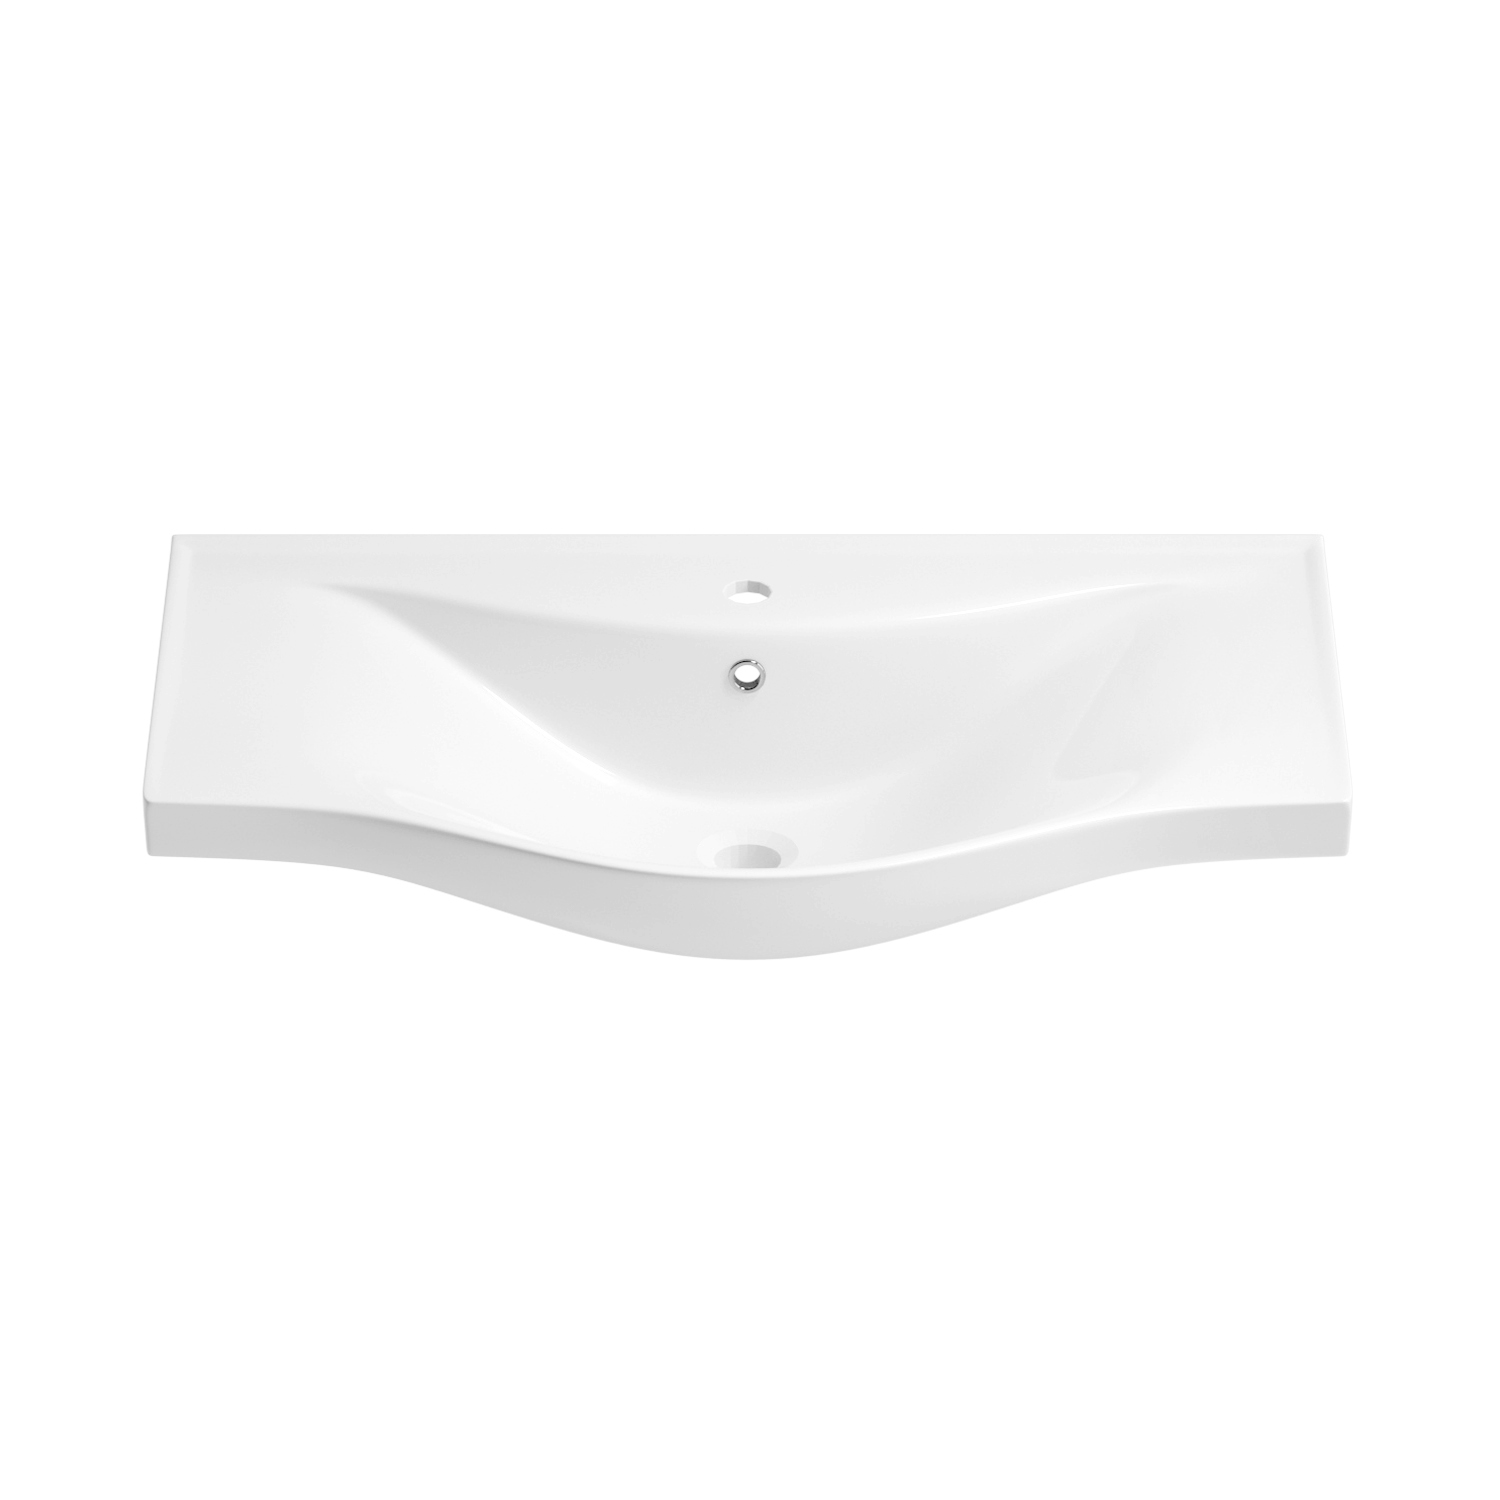 Подвесная раковина Wellsee Bisou 151206000, ширина 75 см, глянцевый белый подвесная мебельная раковина для ванной wellsee